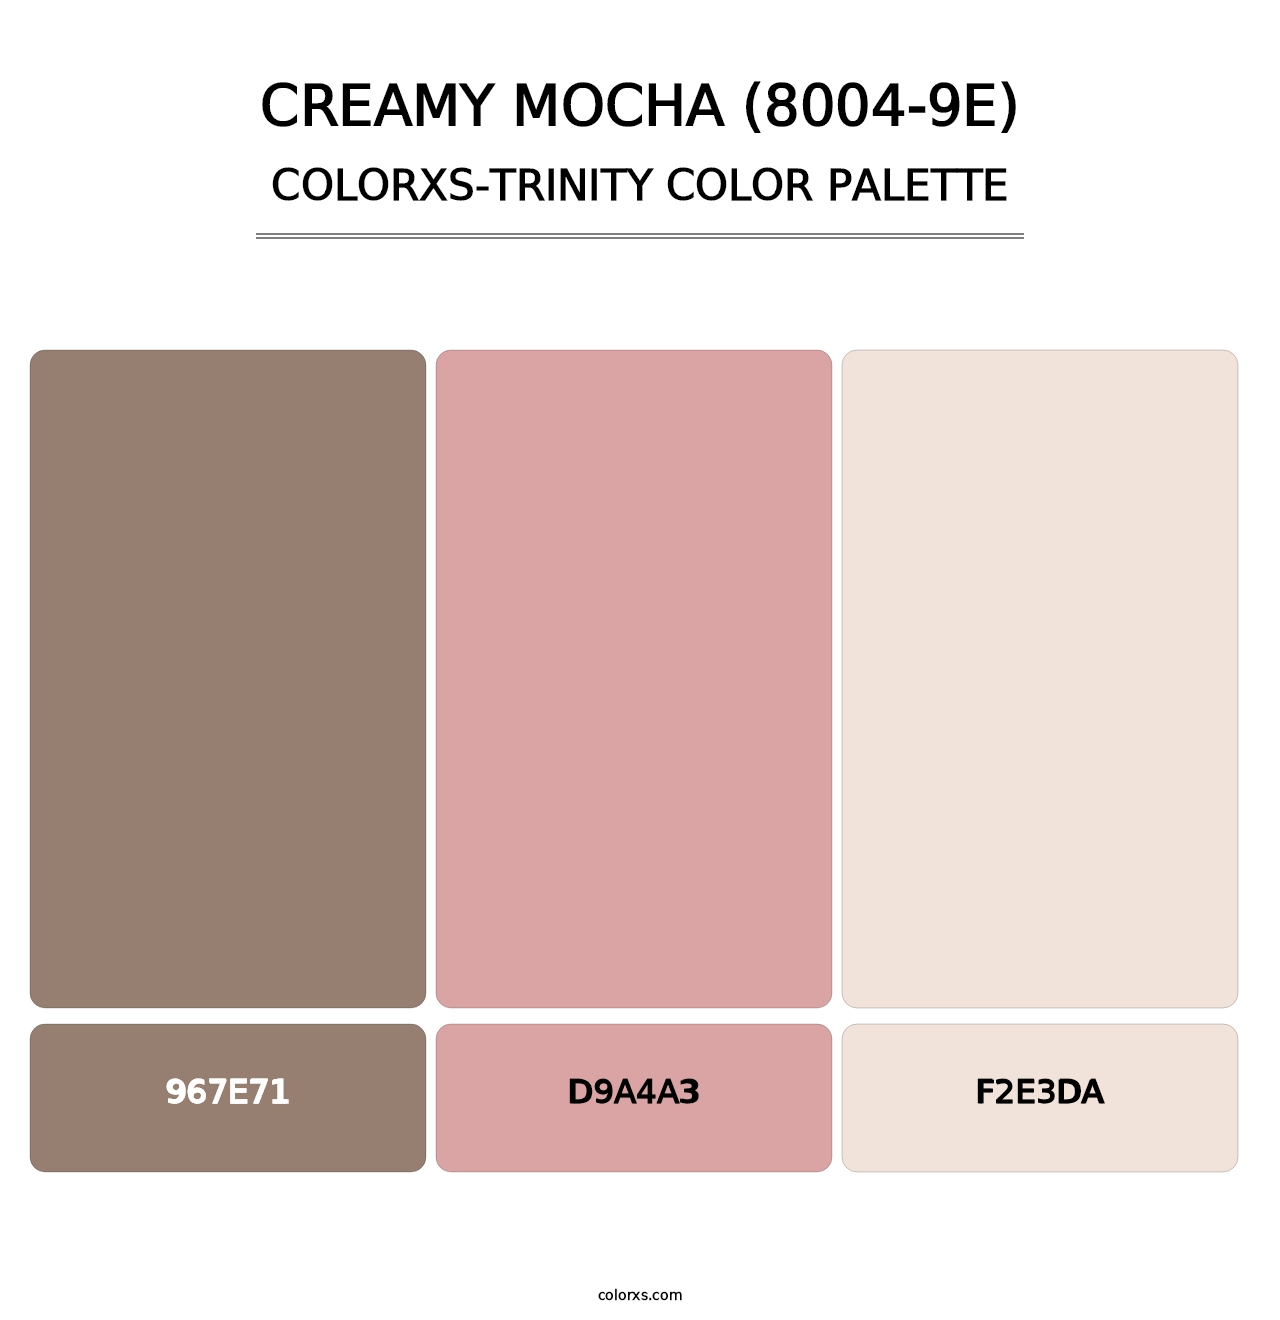 Creamy Mocha (8004-9E) - Colorxs Trinity Palette